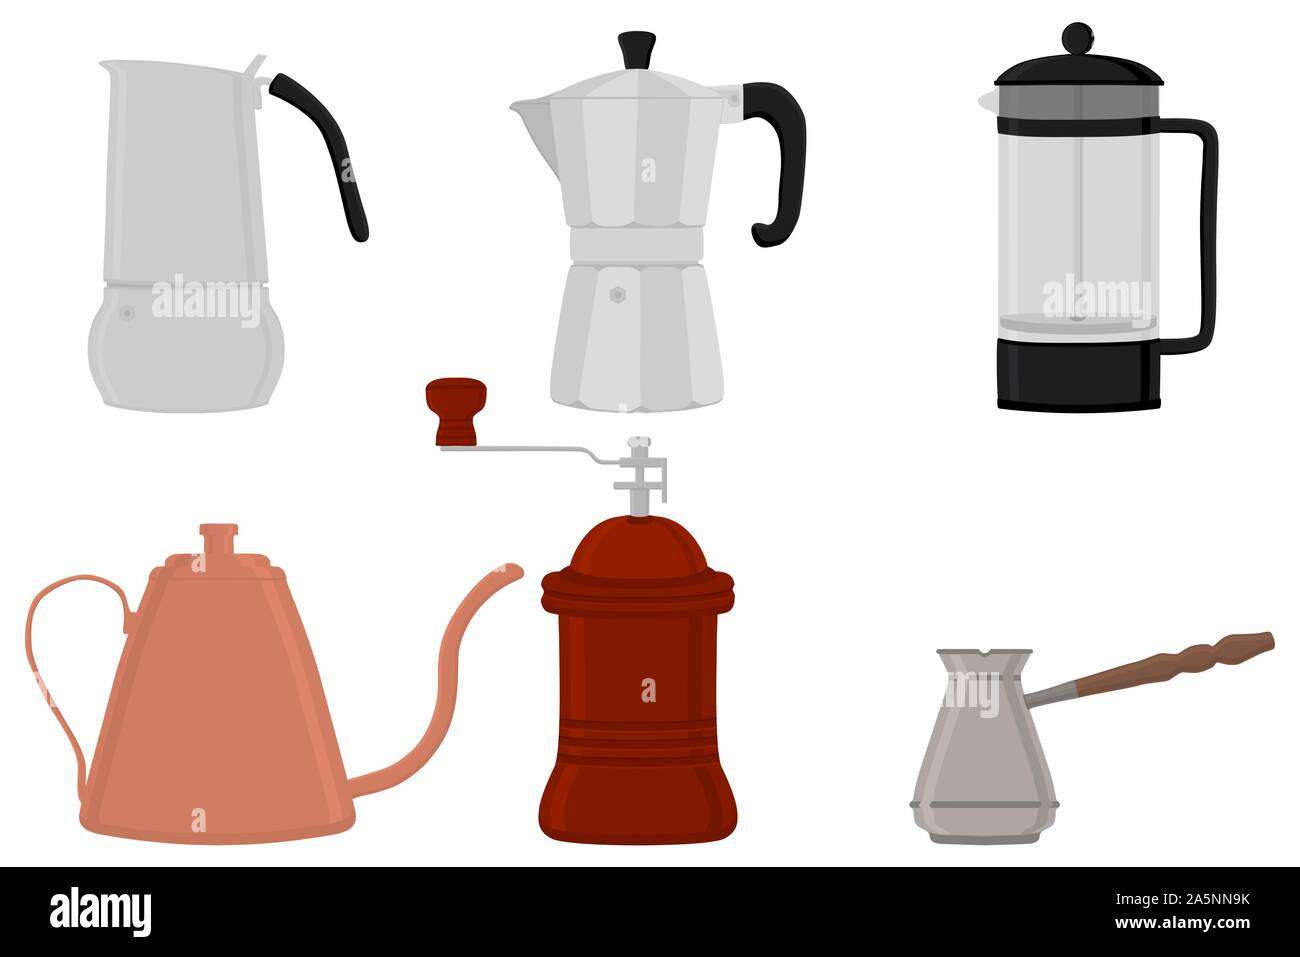 Abbildung: Symbol auf Thema große farbige verschiedene Arten Teekocher Wasserkocher, neue Größe logo Mühlen eingestellt. Mühle Muster bestehend aus Sammlung Zubehör zu Teekocher Stock Vektor